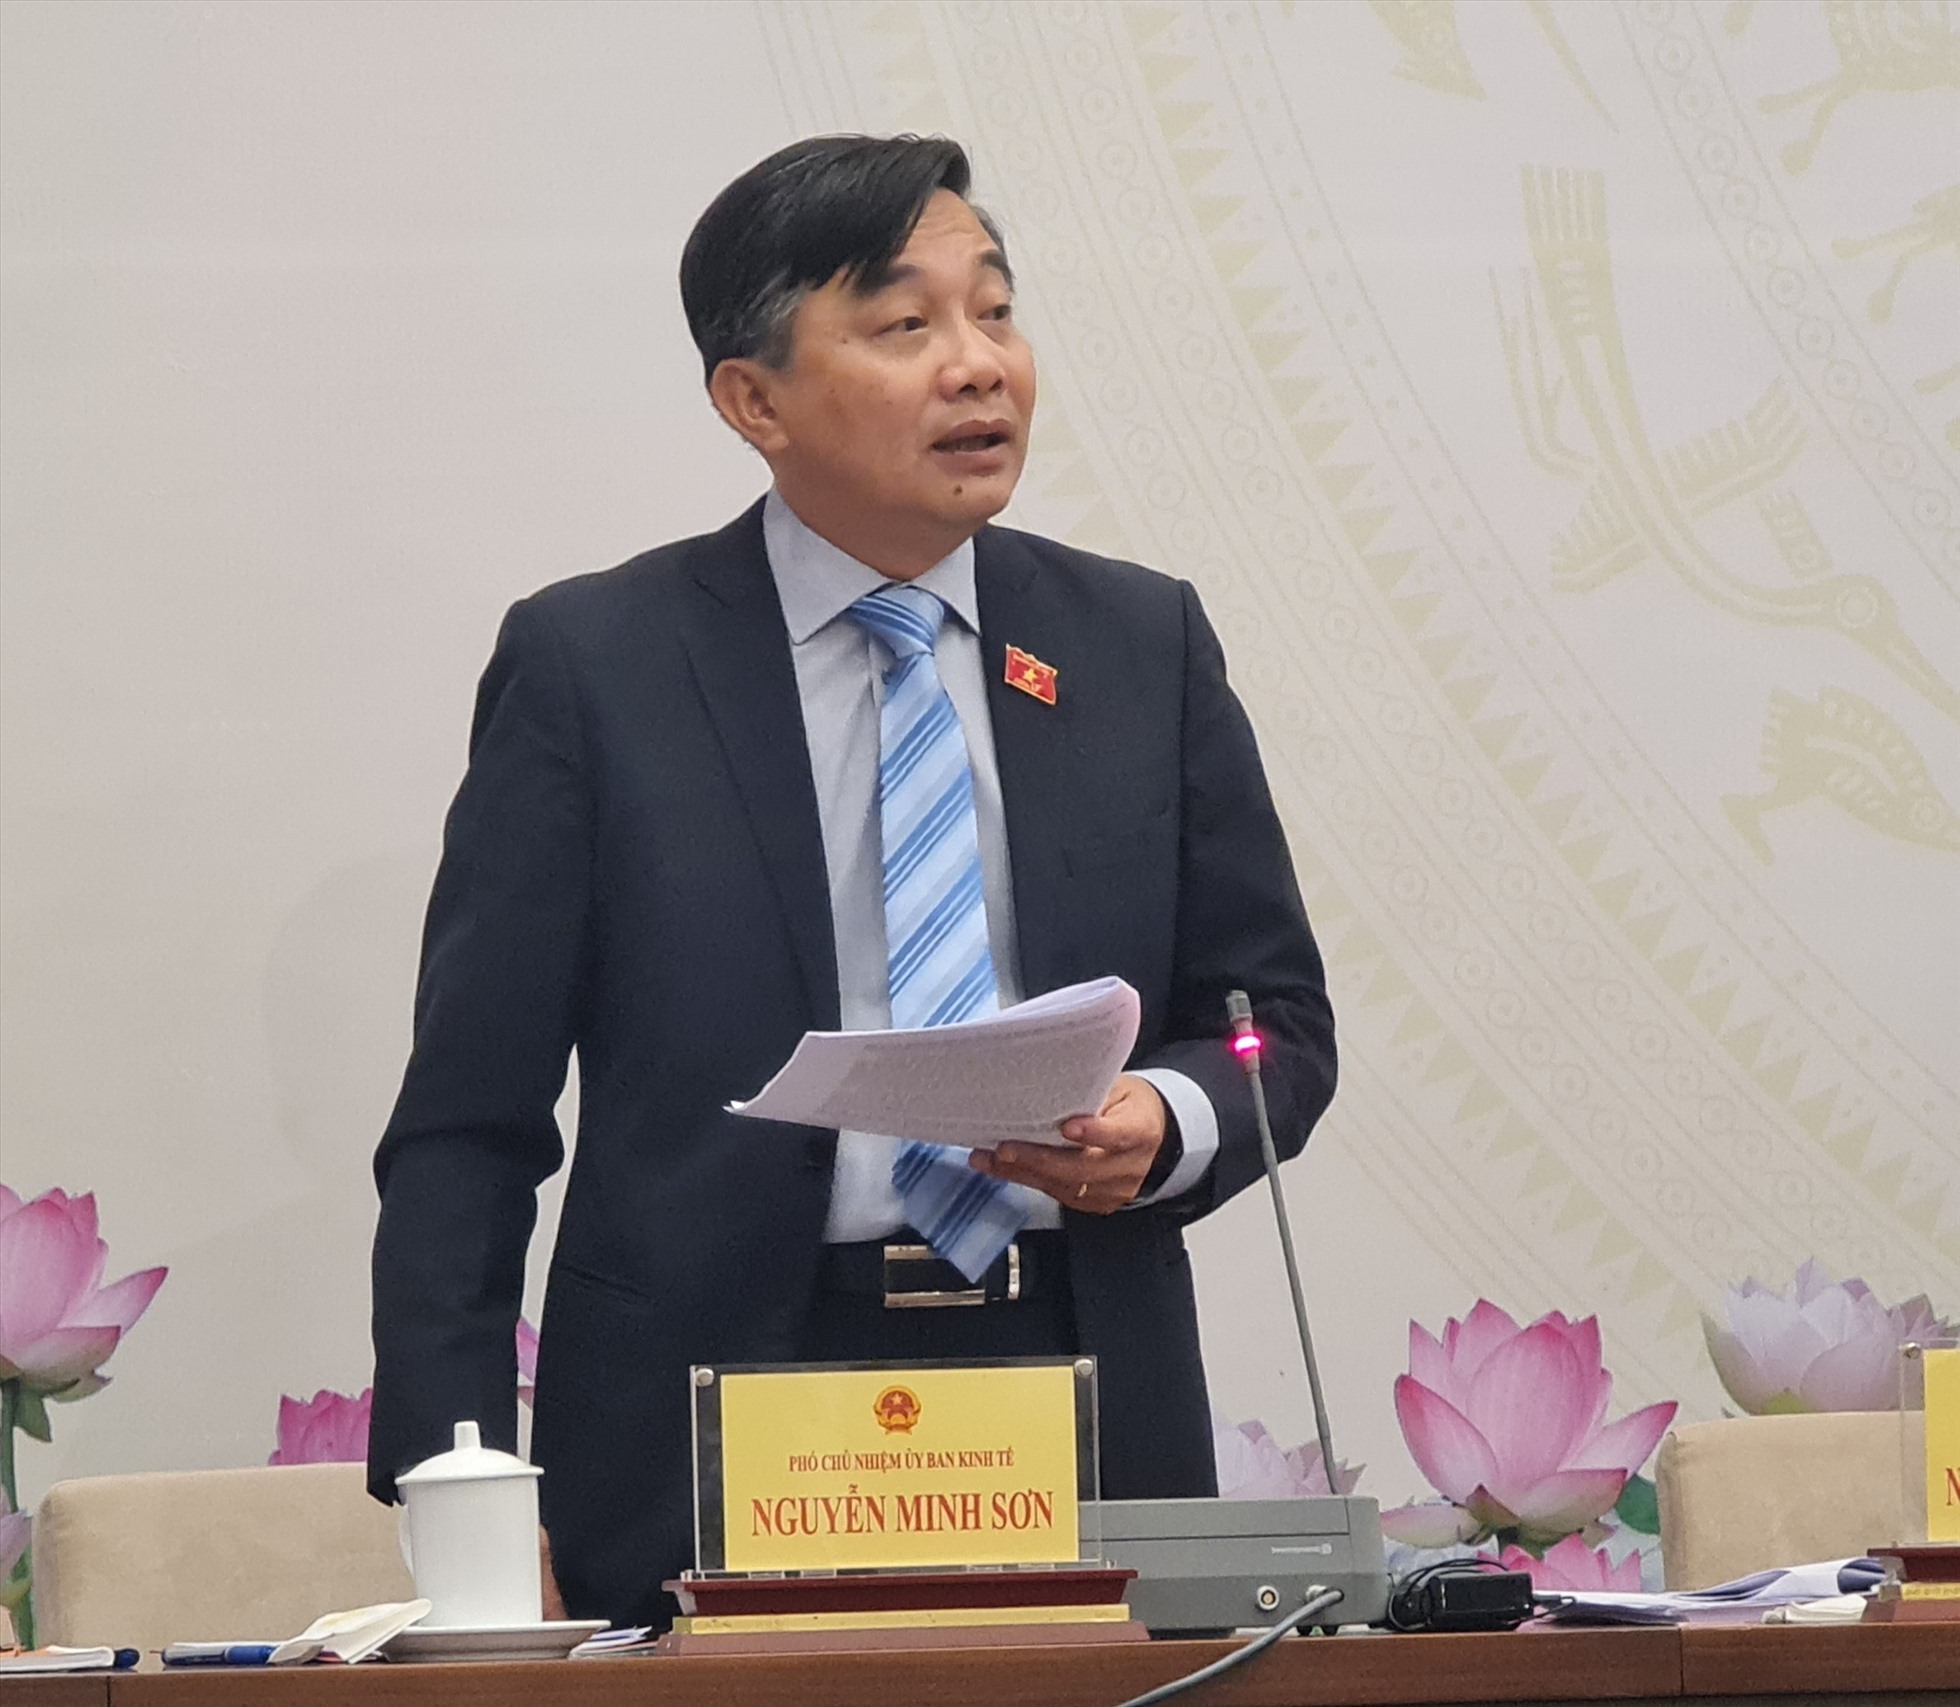 Phó Chủ nhiệm Ủy ban Kinh tế của Quốc hội Nguyễn Minh Sơn trả lời tại họp báo. Ảnh: PV